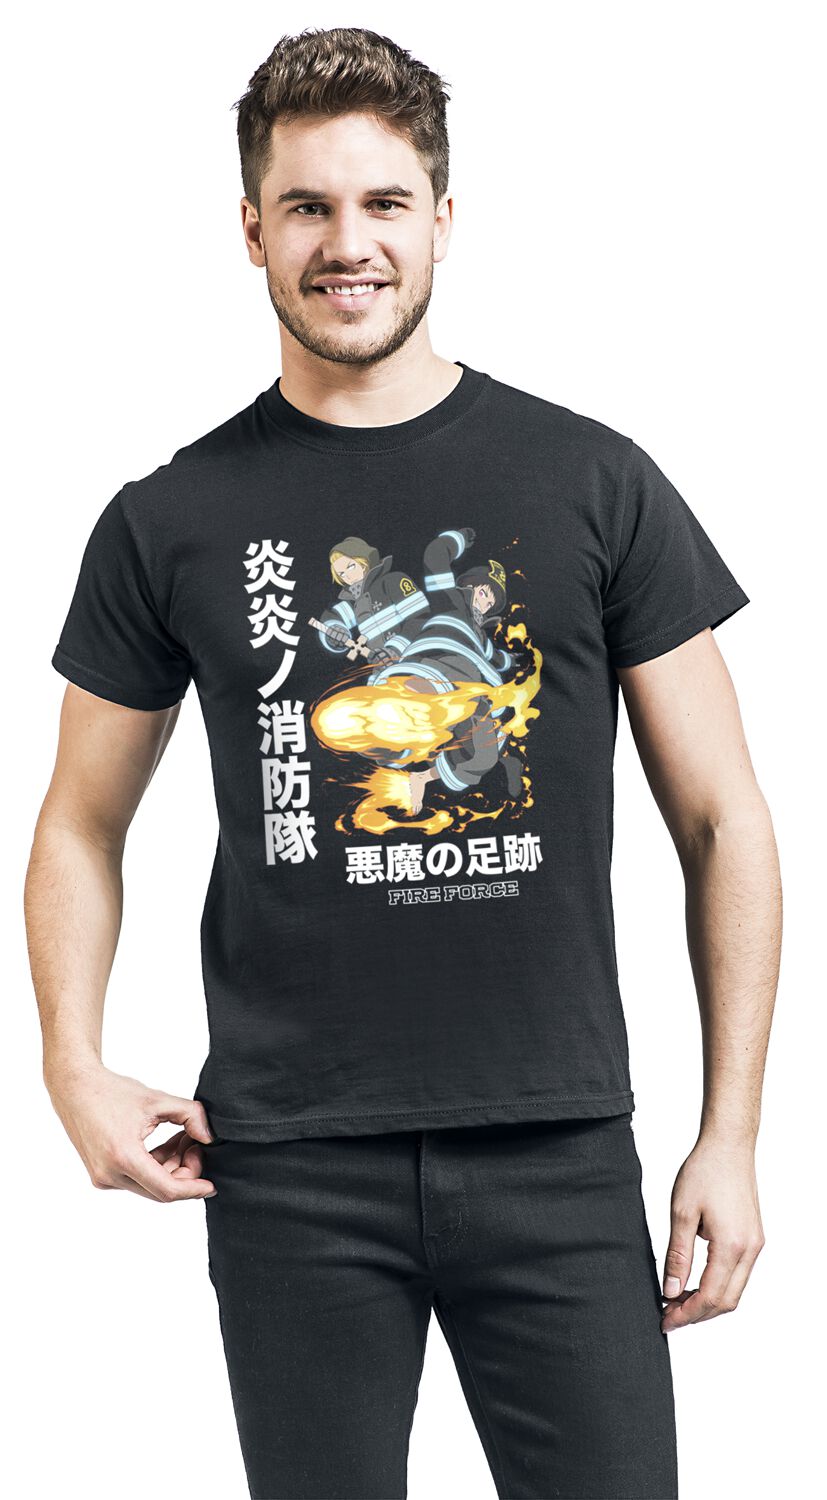 Fire Force - Anime T-Shirt - Devil Footprints - S bis XL - für Männer - Größe L - schwarz  - Lizenzierter Fanartikel